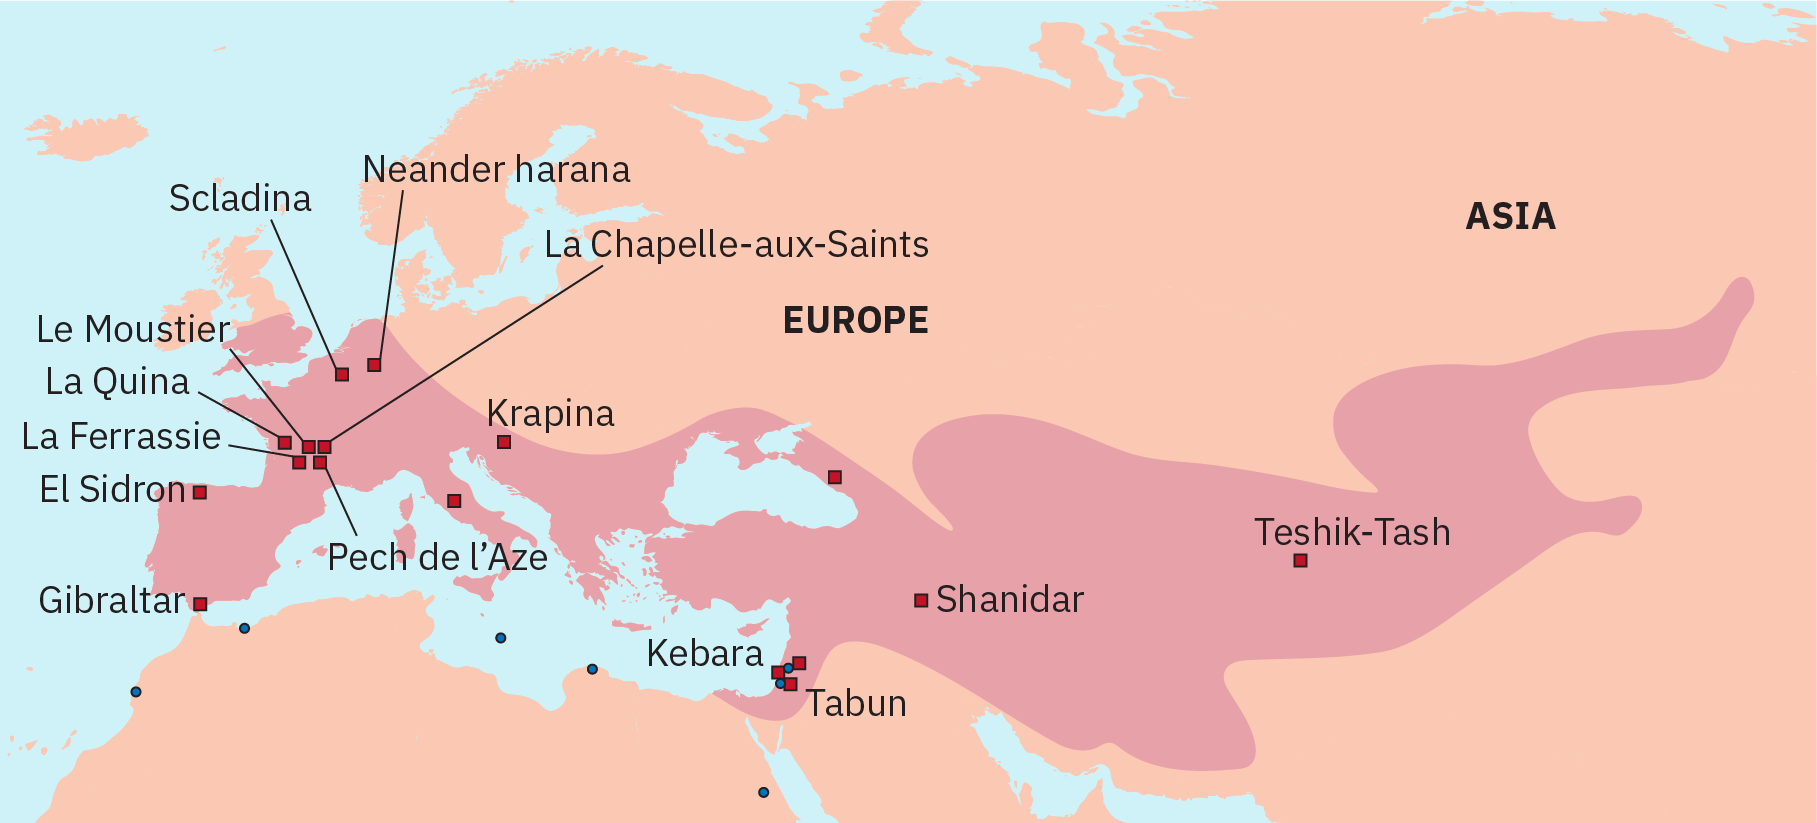 تظهر مواقع المواقع والأراضي في أوروبا والشرق الأوسط وجزء داخلي من آسيا.